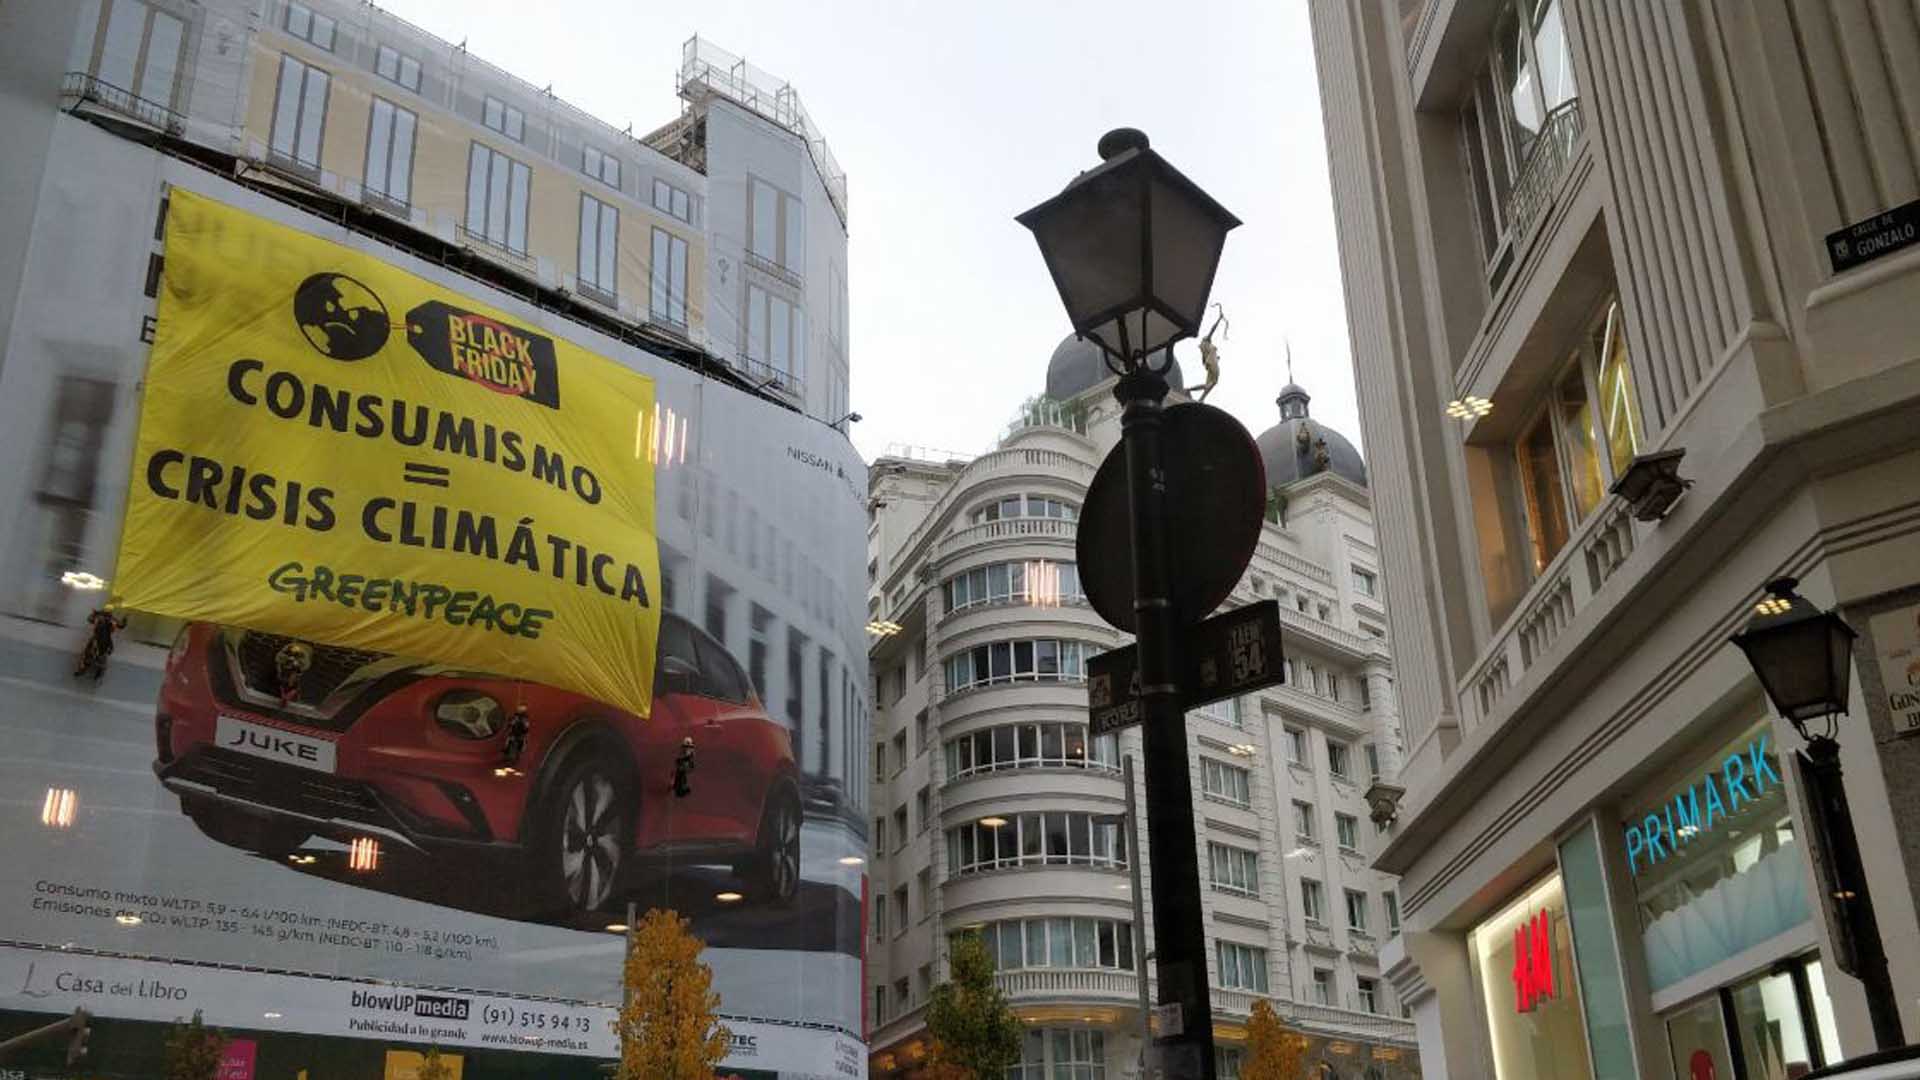 Greenpeace despliega una pancarta en Madrid contra el Black Friday: "Consumismo=crisis climática"